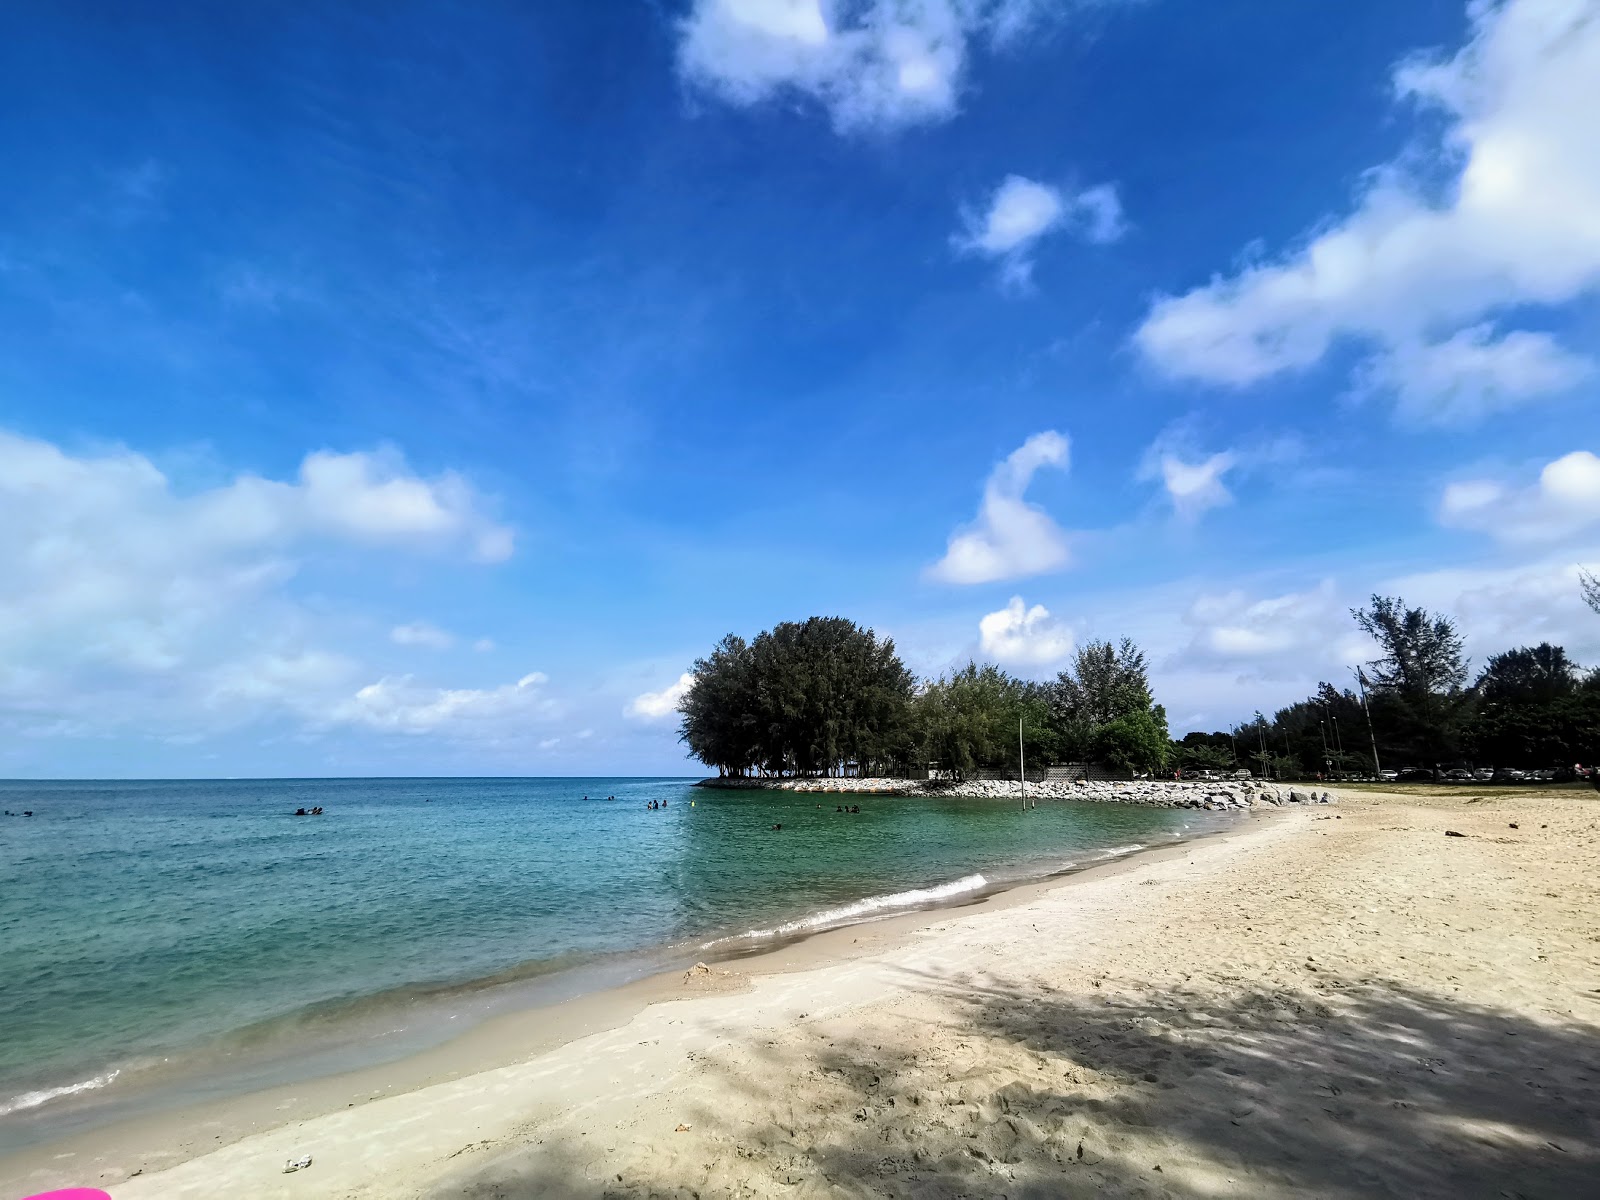 Cahaya Negeri beach'in fotoğrafı parlak kum yüzey ile